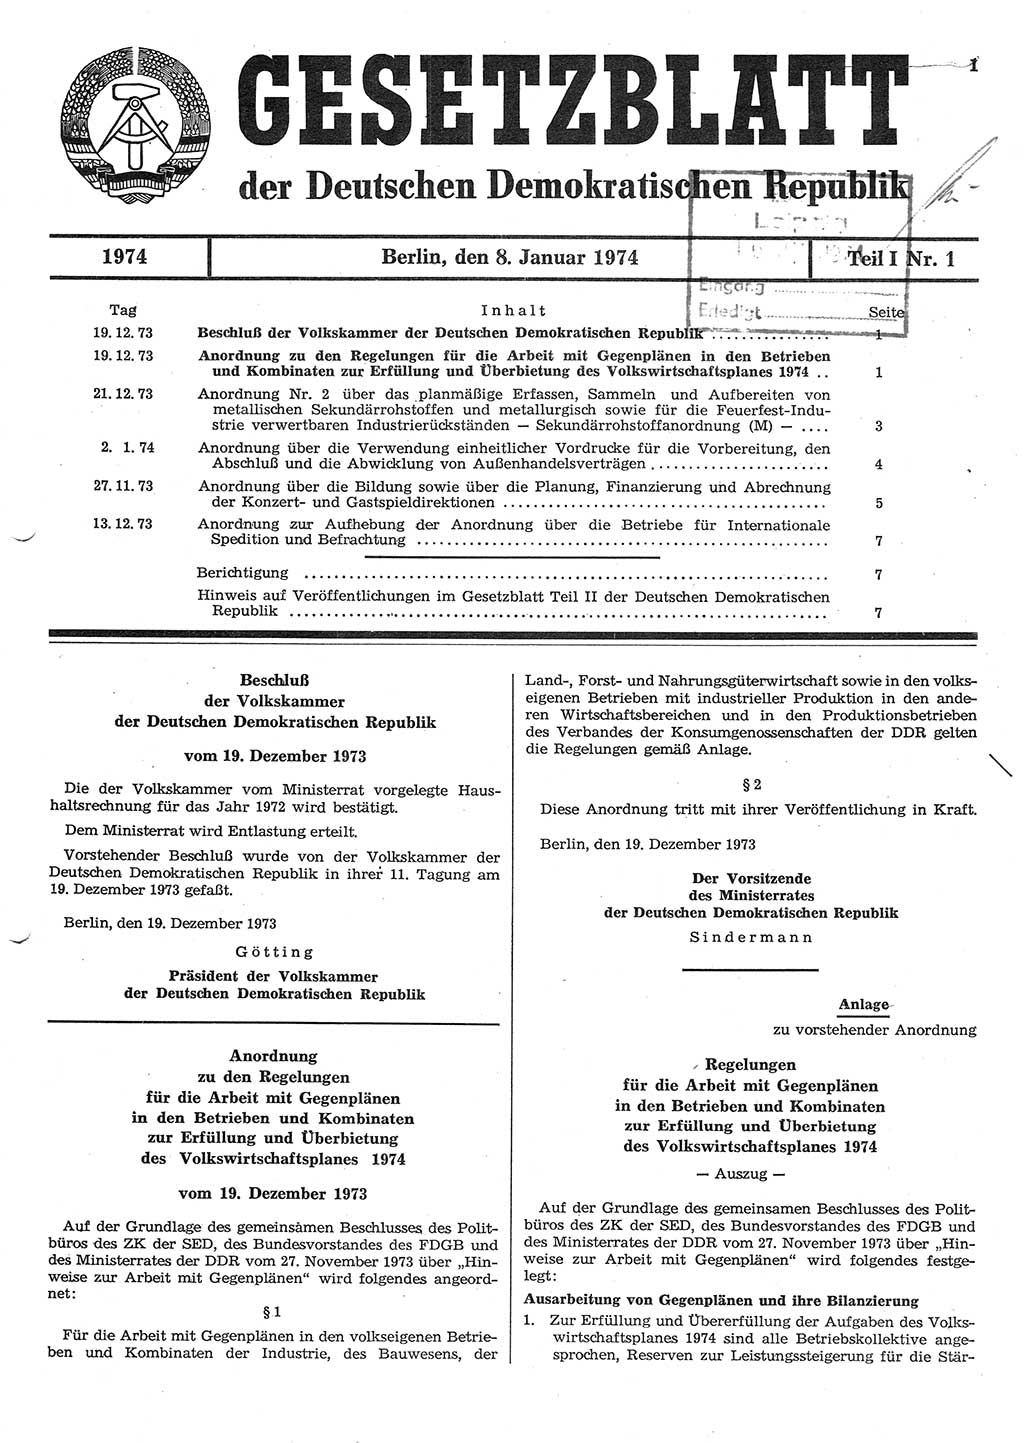 Gesetzblatt (GBl.) der Deutschen Demokratischen Republik (DDR) Teil Ⅰ 1974, Seite 1 (GBl. DDR Ⅰ 1974, S. 1)